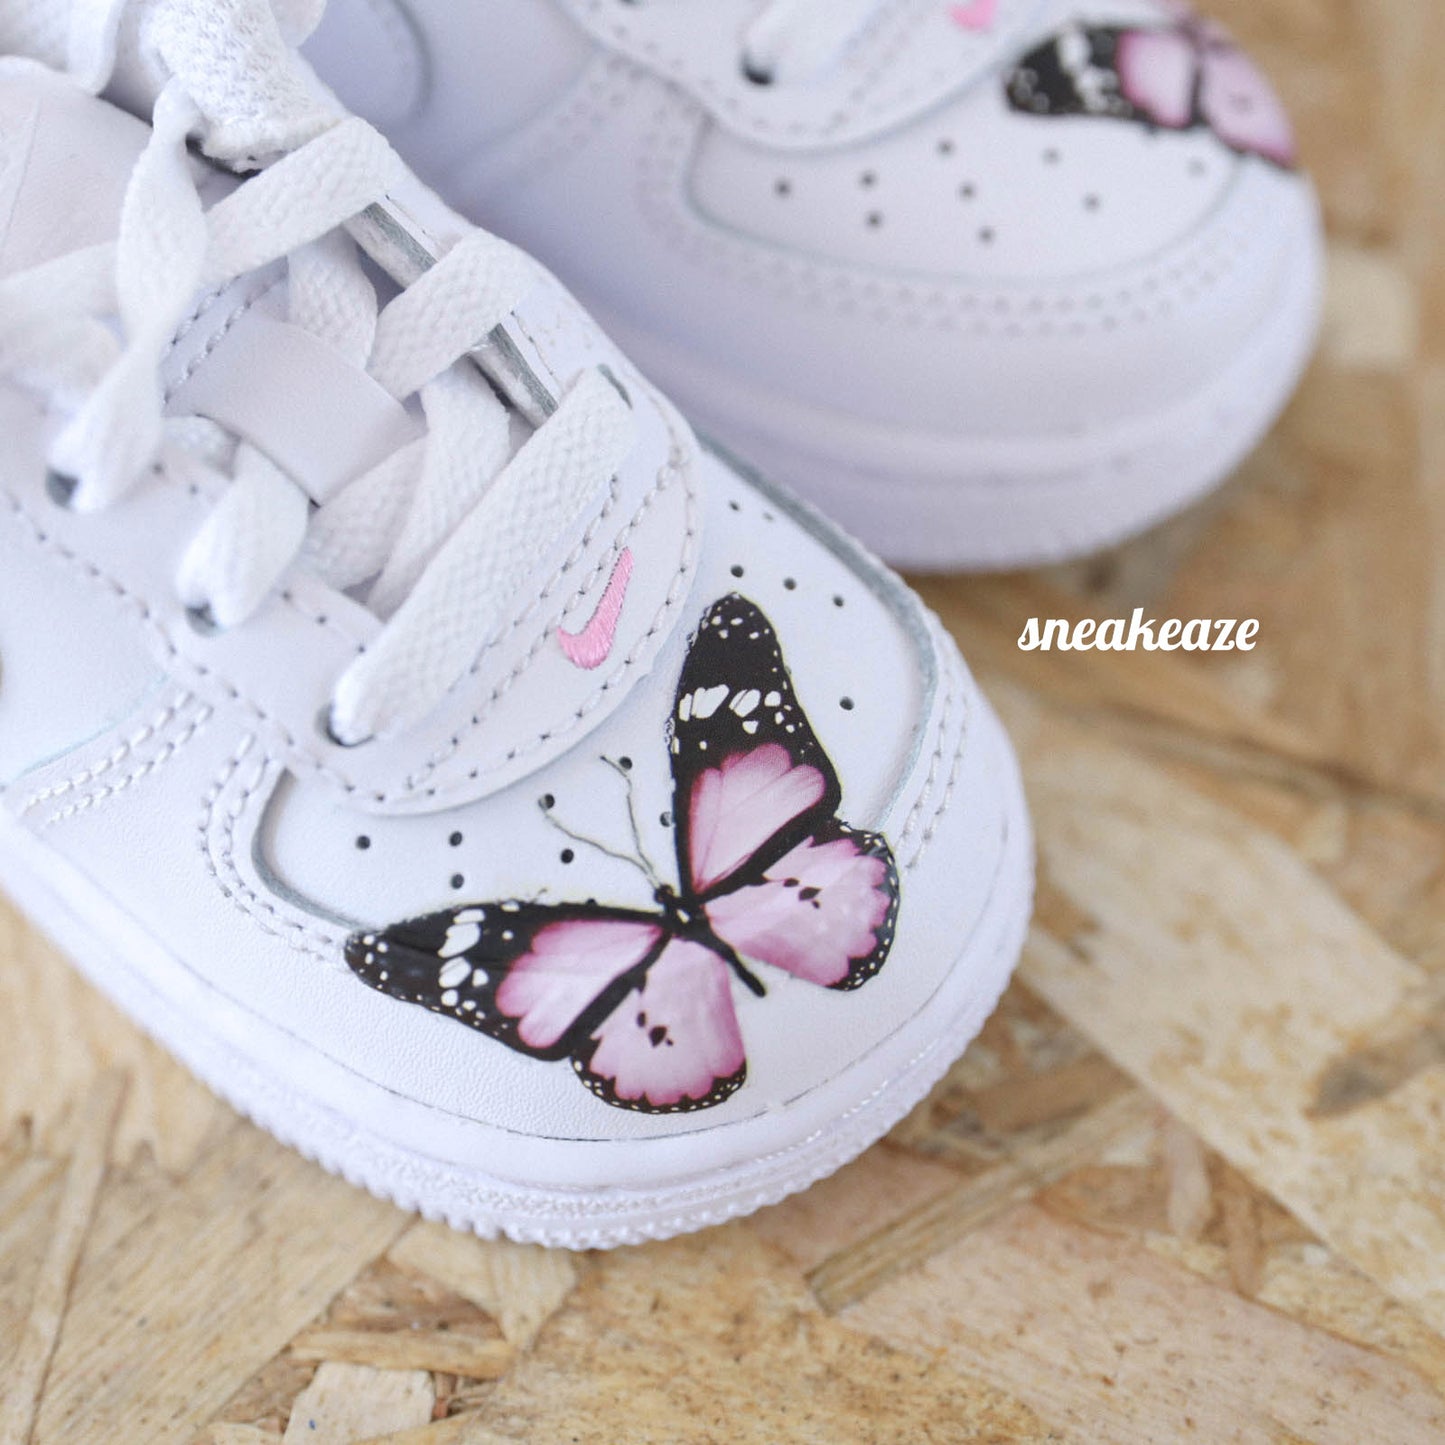 baskets nike air force 1 custom pour les enfants ou bébé - motifs papillons et personnalisation avec le prénom - sneakeaze customs skz